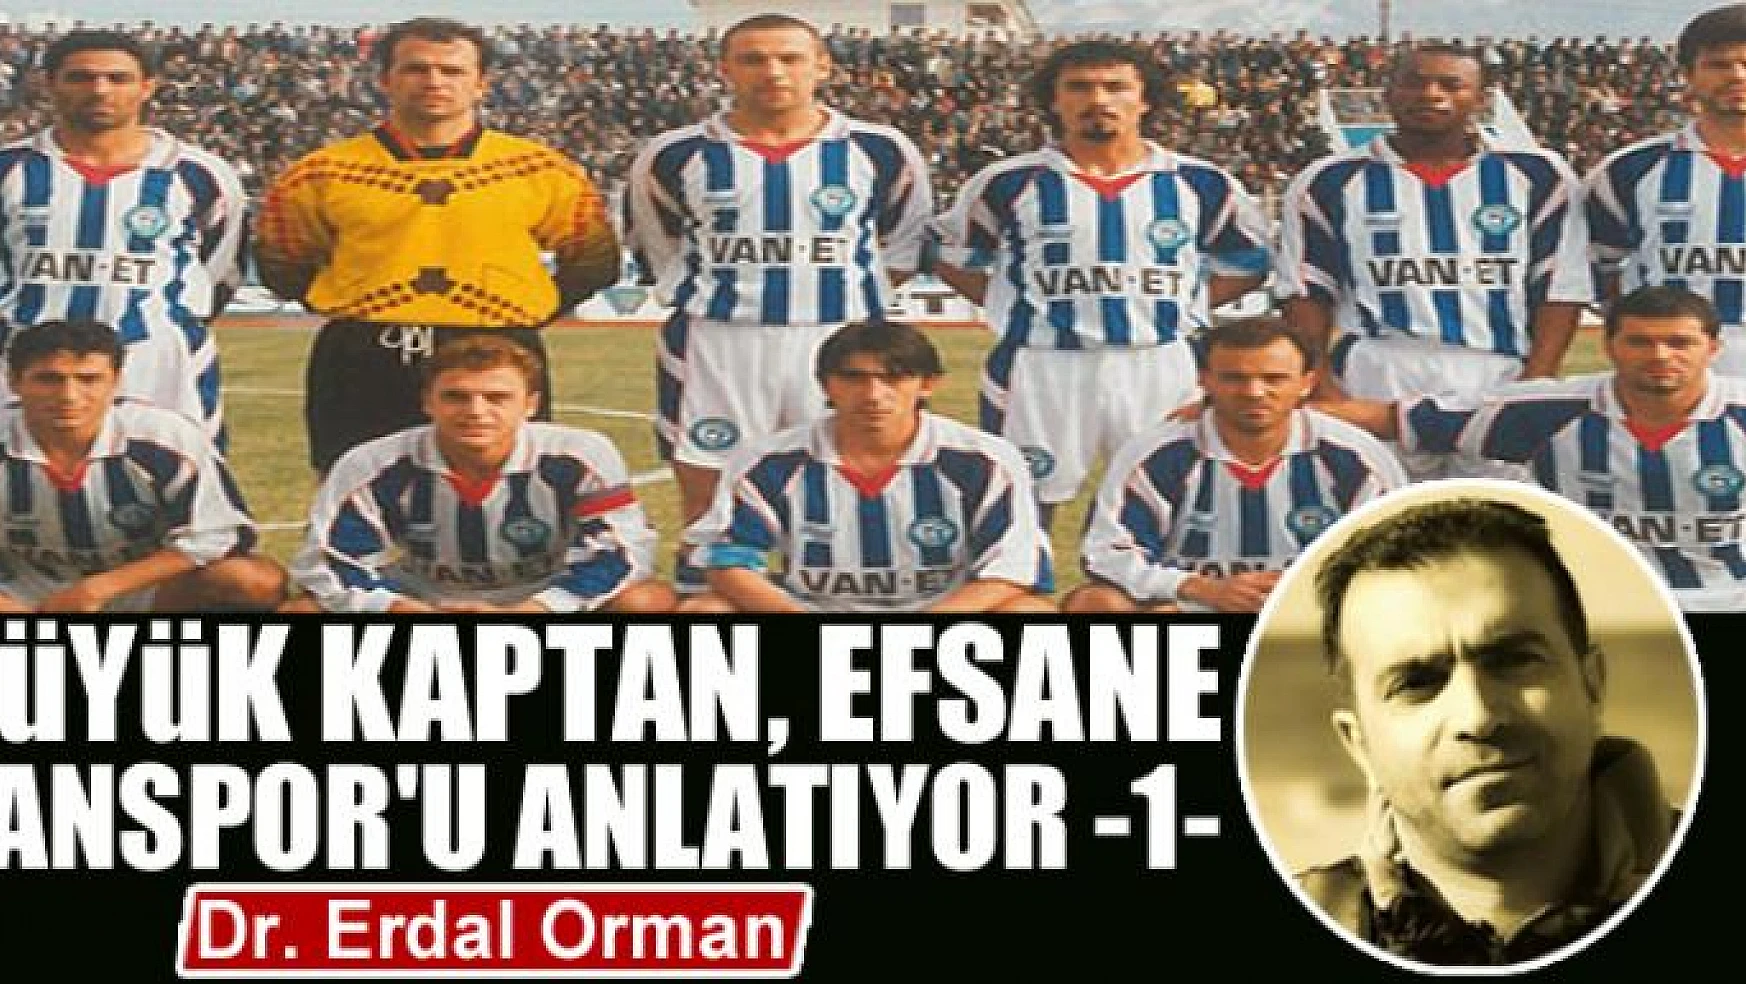 Büyük Kaptan, Efsane Vanspor'u Anlatıyor -1-